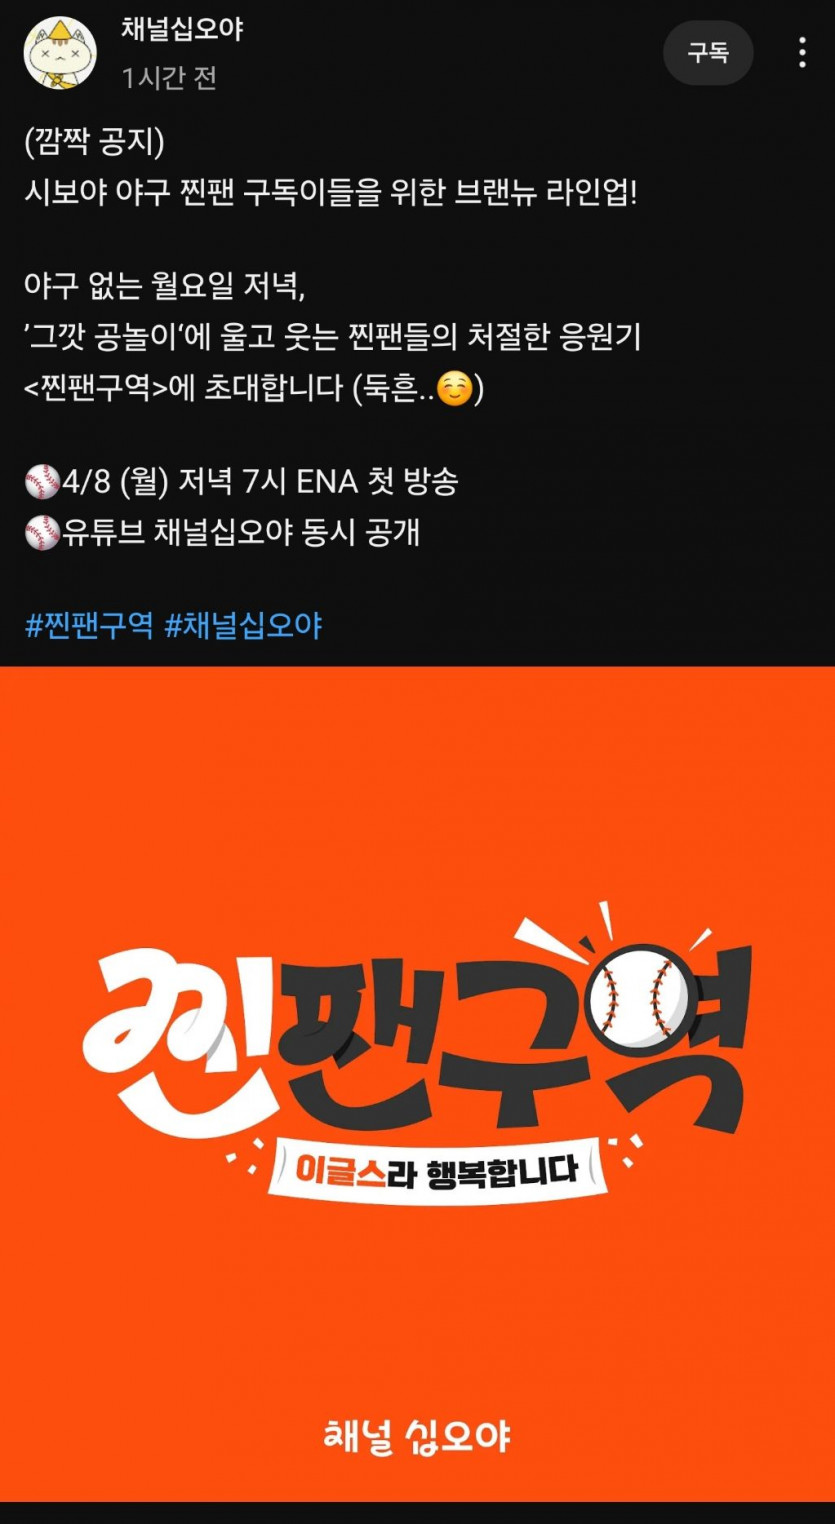 나영석 pd 새로운 야구예능..ㅎㅎㅎ(0)